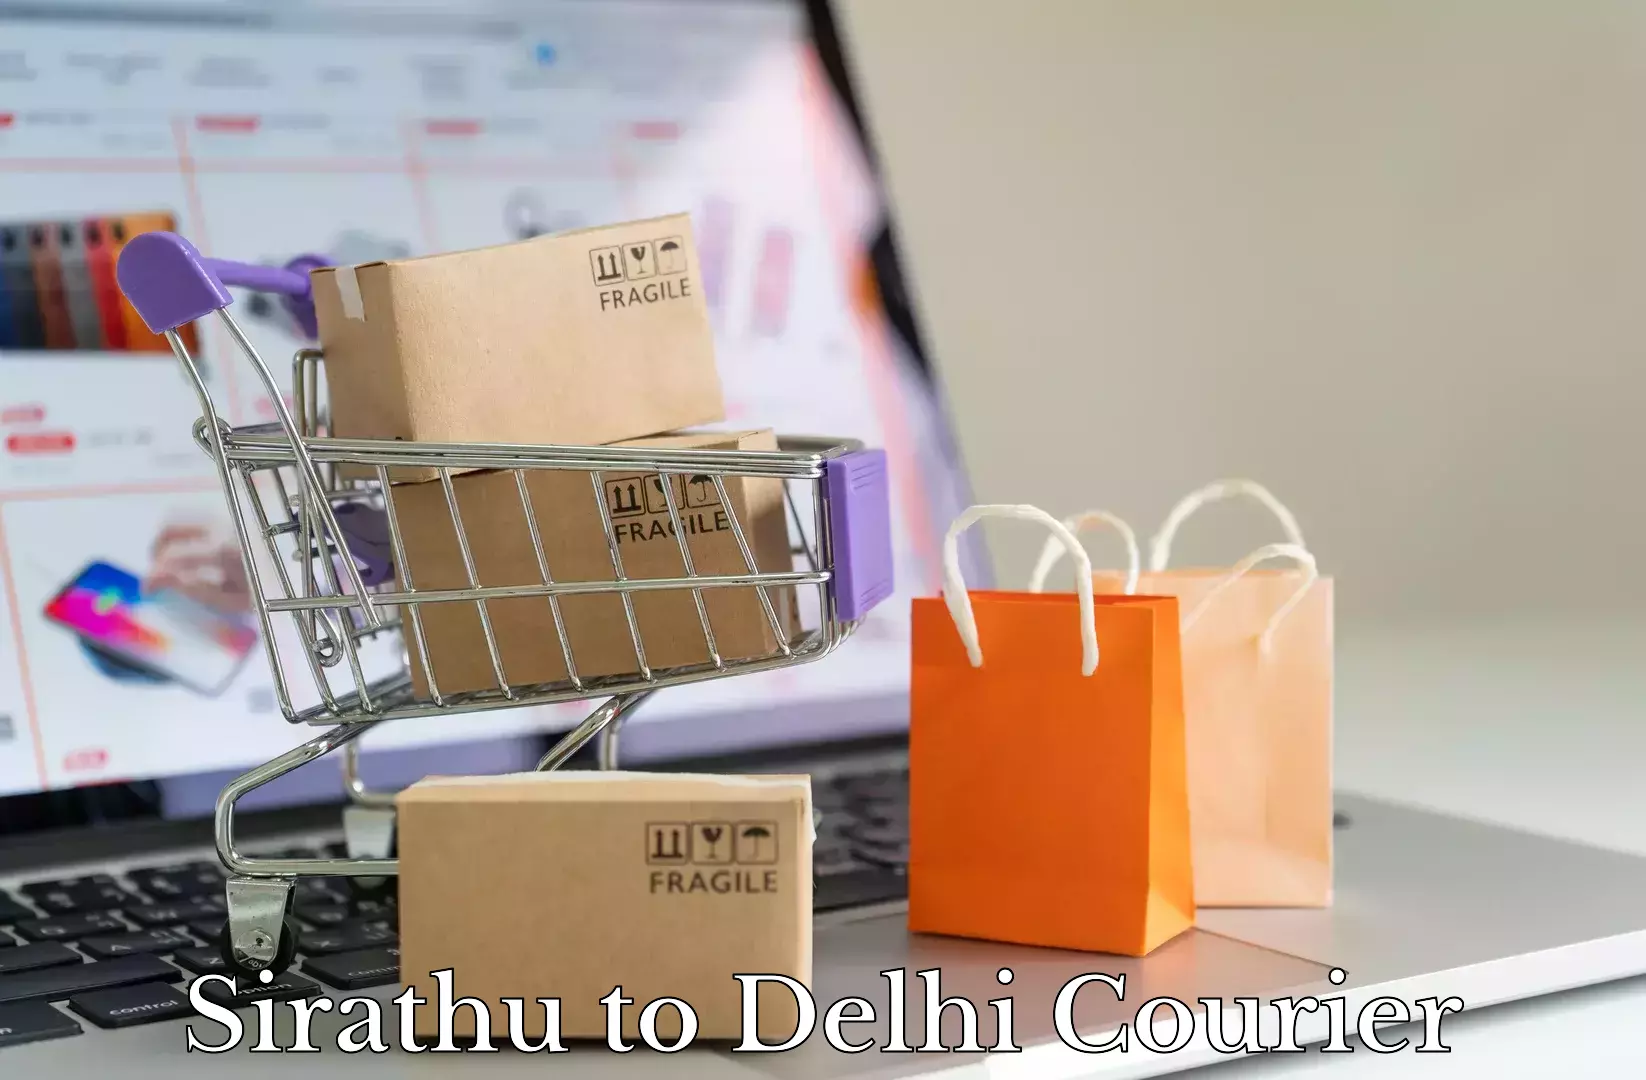 Quality moving company Sirathu to Delhi